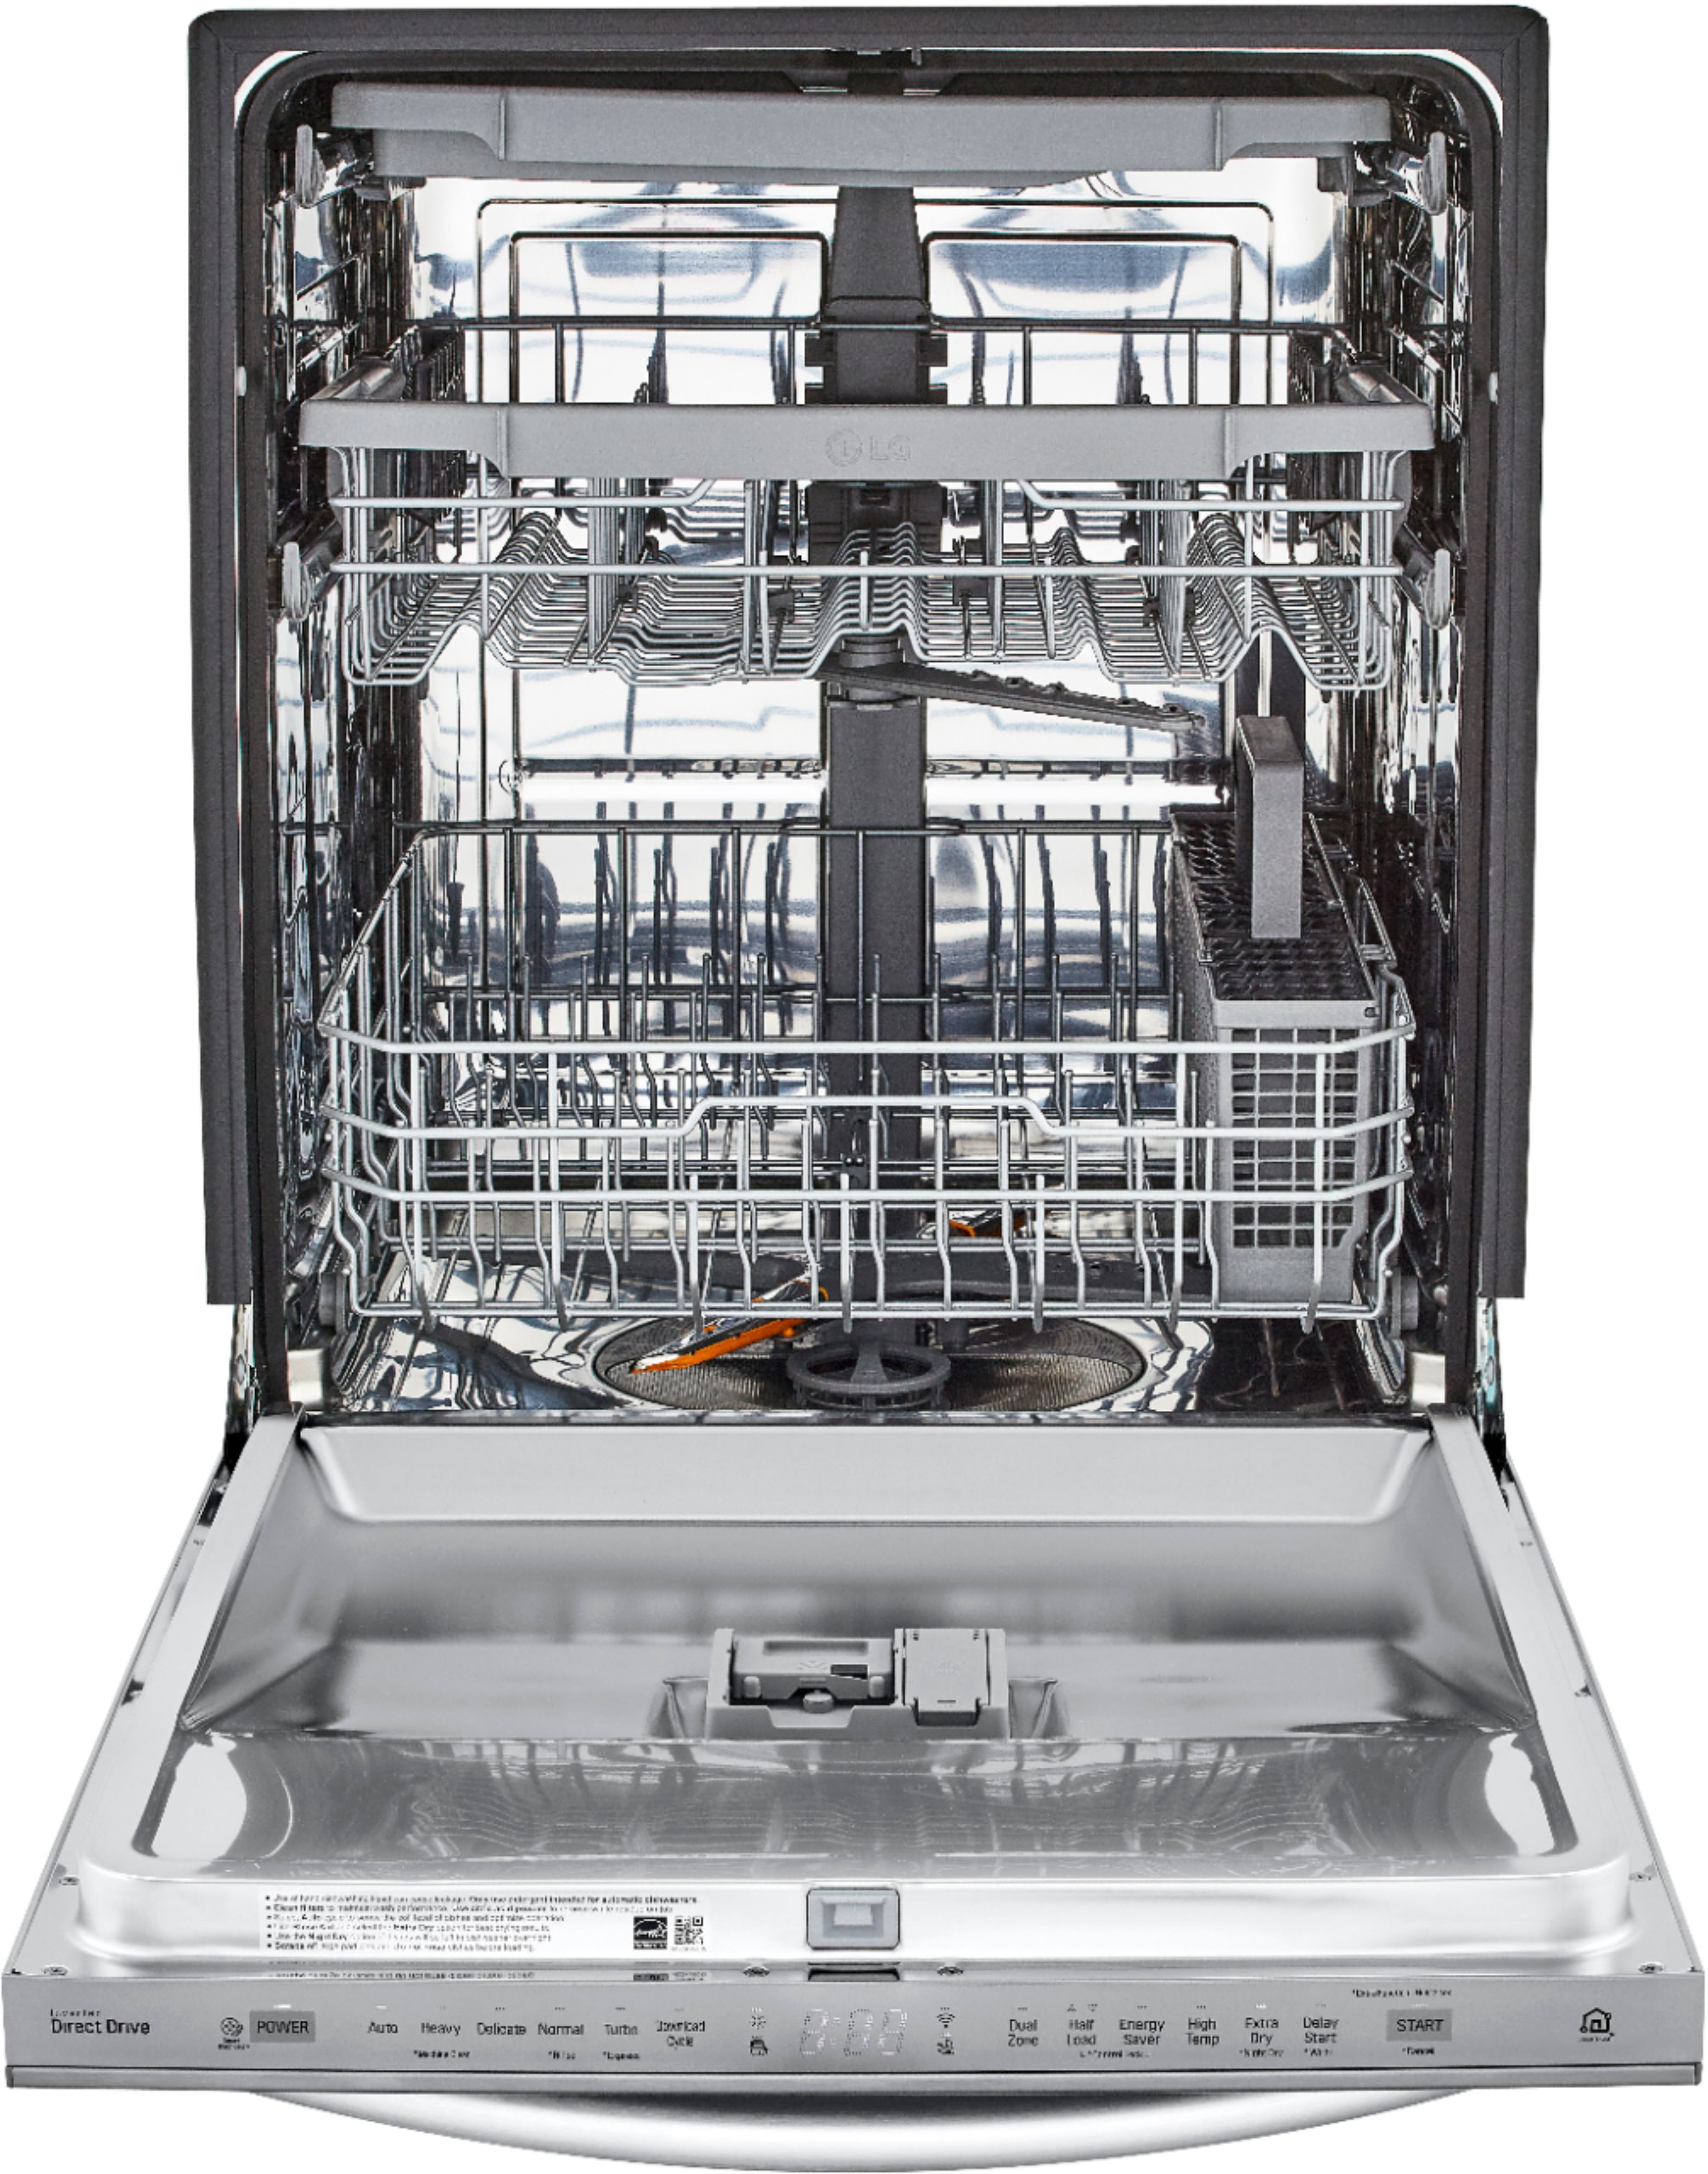 lg ldt5678st dishwasher reviews